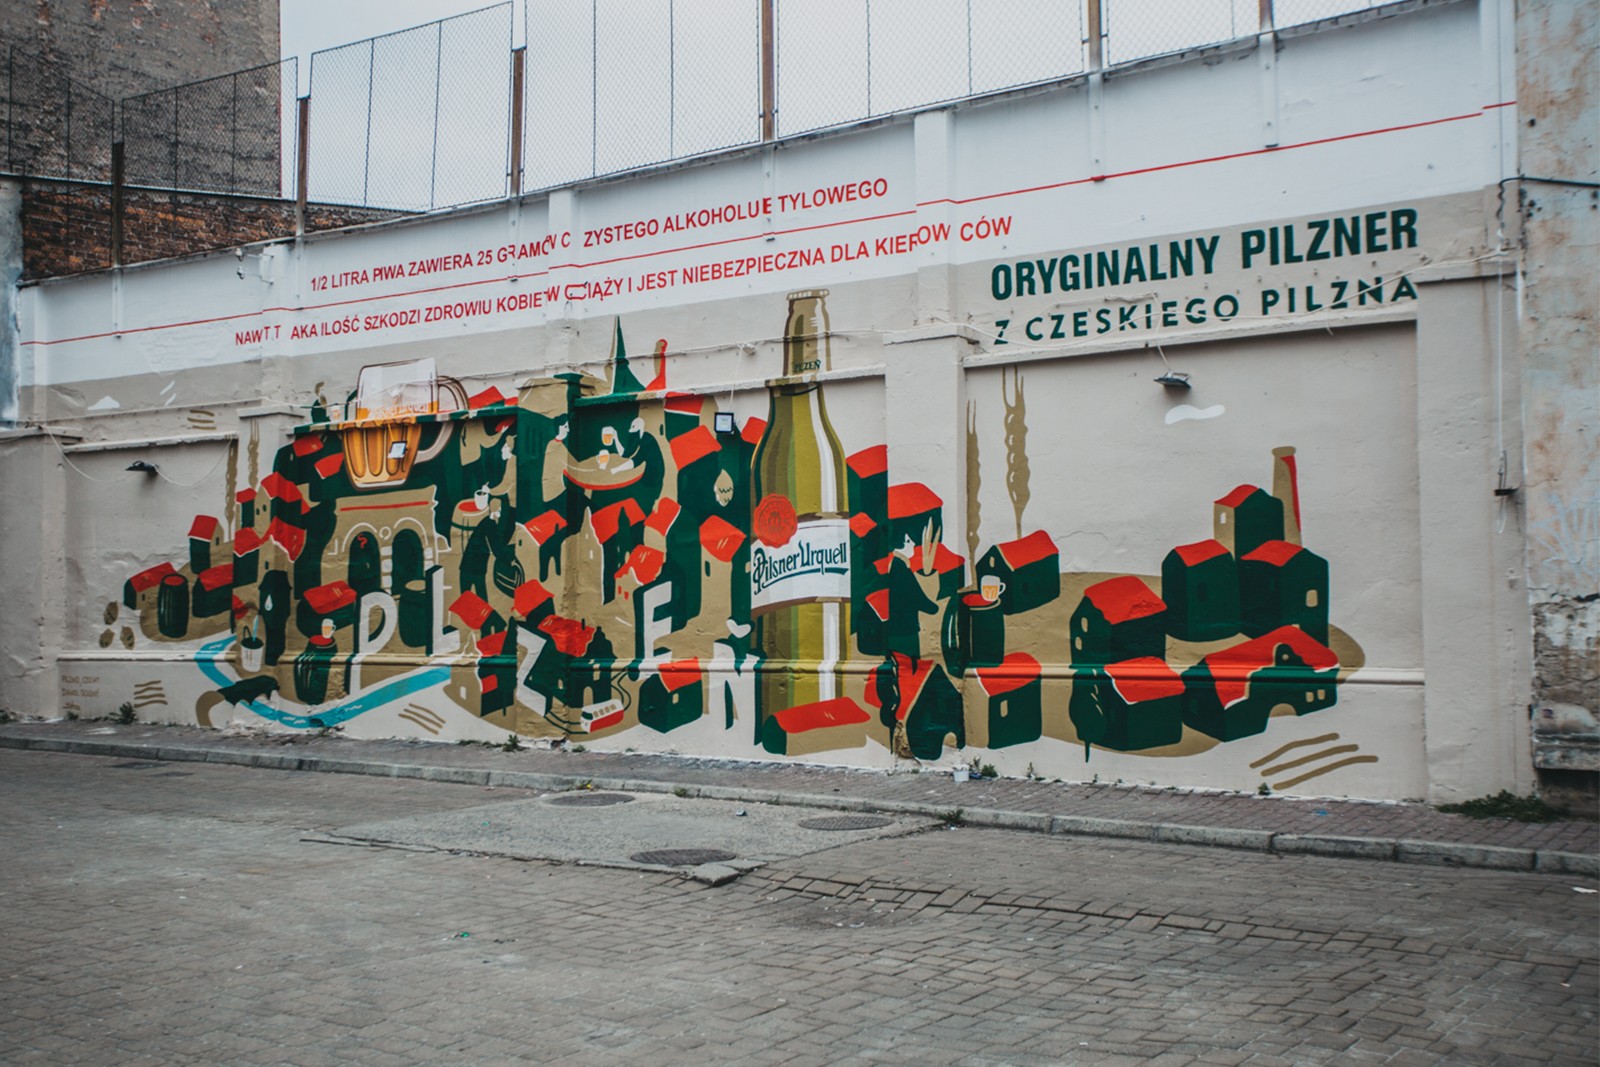 Mural Oryginalny pilzner z czeskiego Pilzna na krakowskim Tytano | Oryginalny pilzner z czeskiego Pilzna | Portfolio